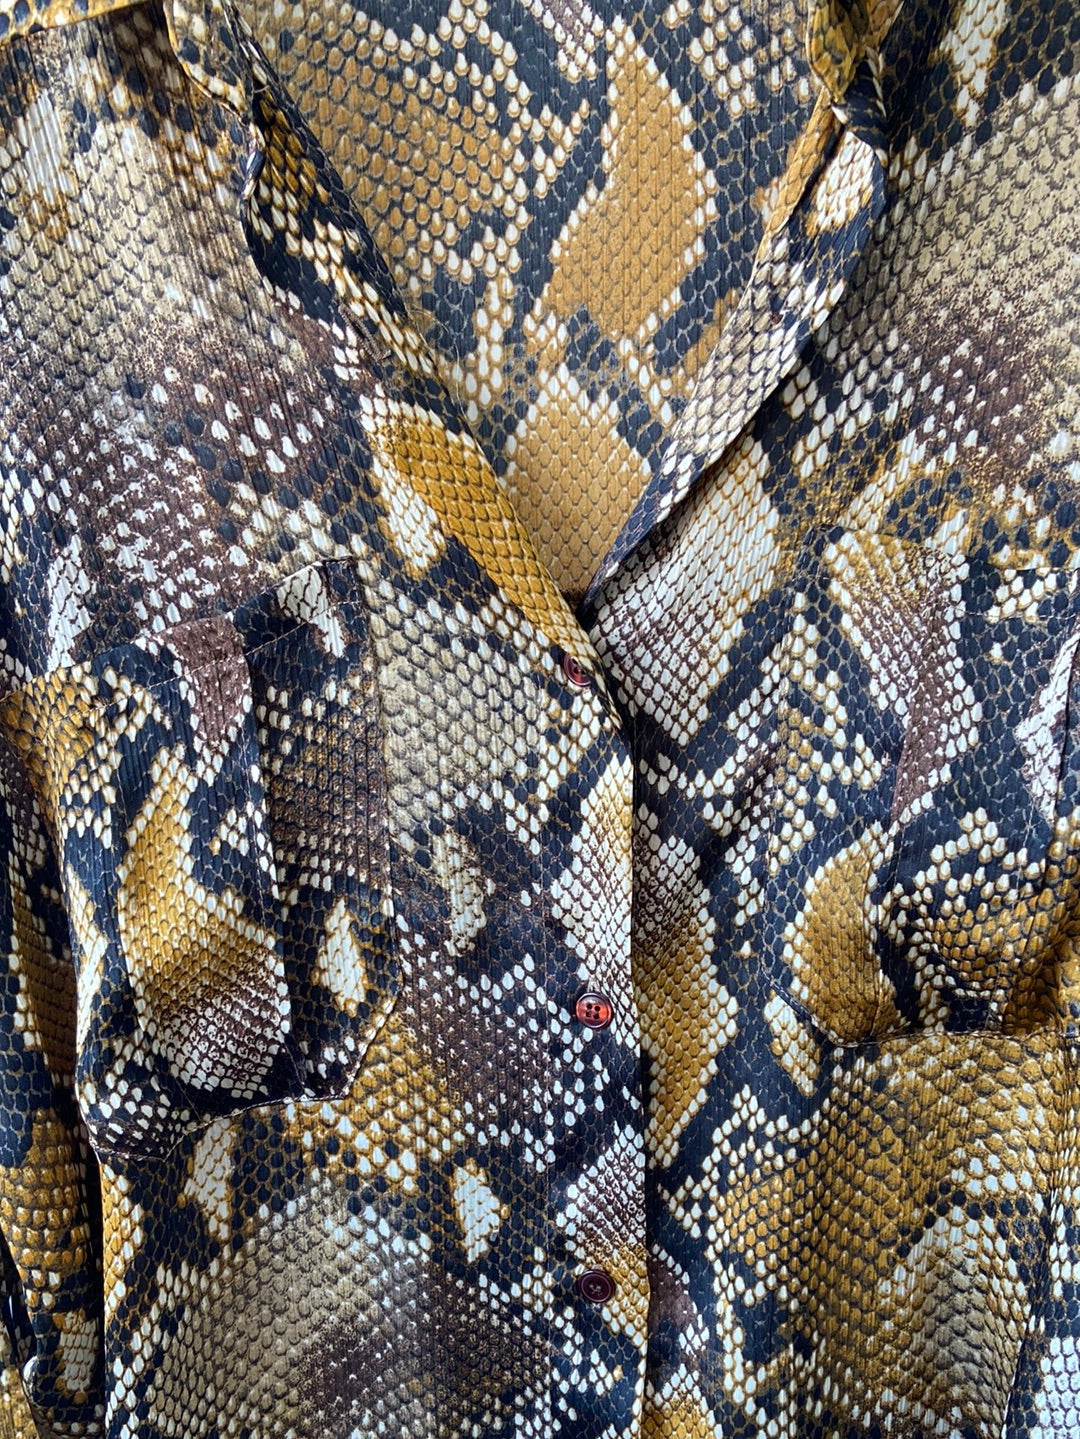 ZARA. Camisa estampado serpiente amarilla xs-s Hibuy market